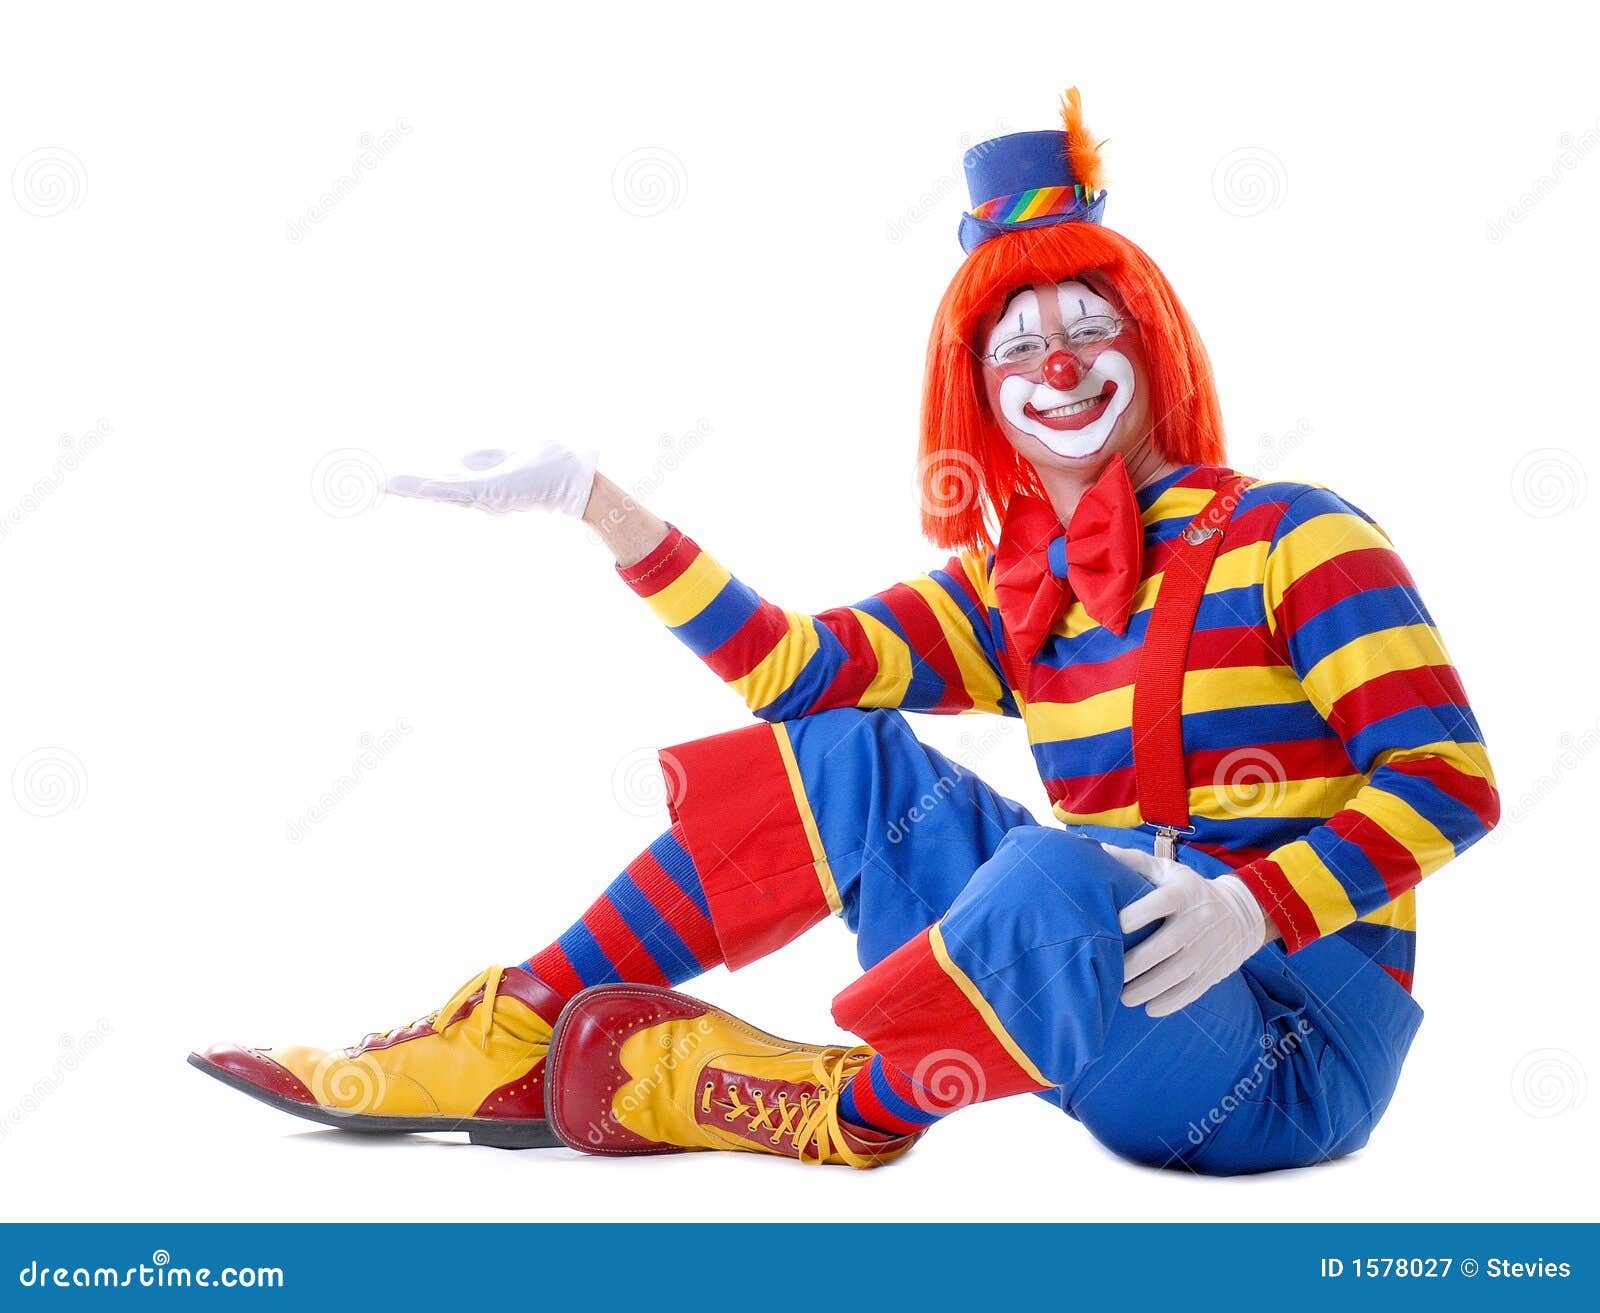 photographie stock libre de droits clown de cirque image